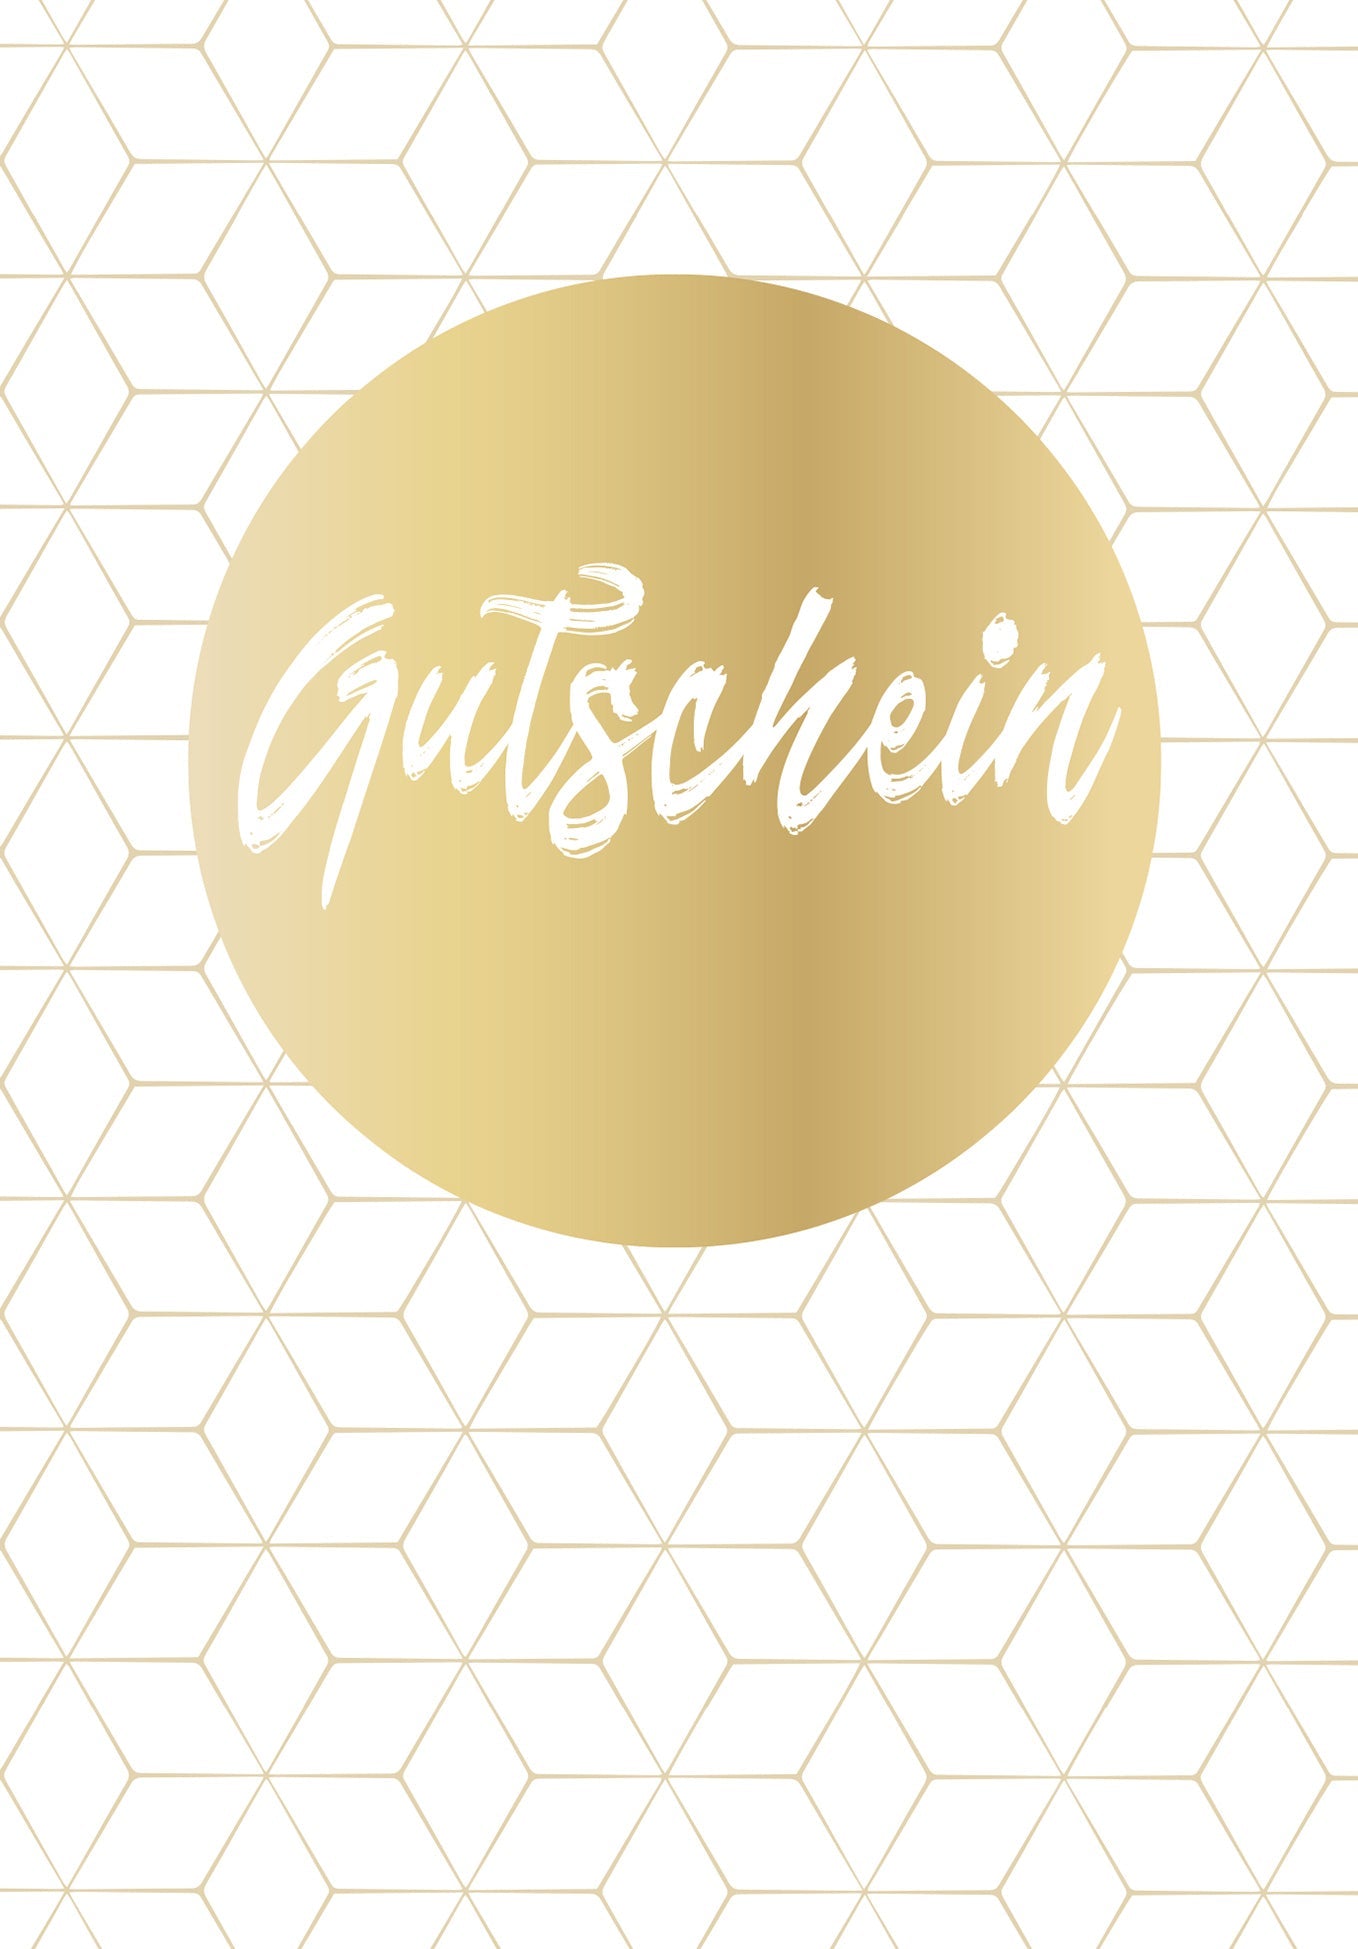 Gutschein - Gold (Gutscheinwert)